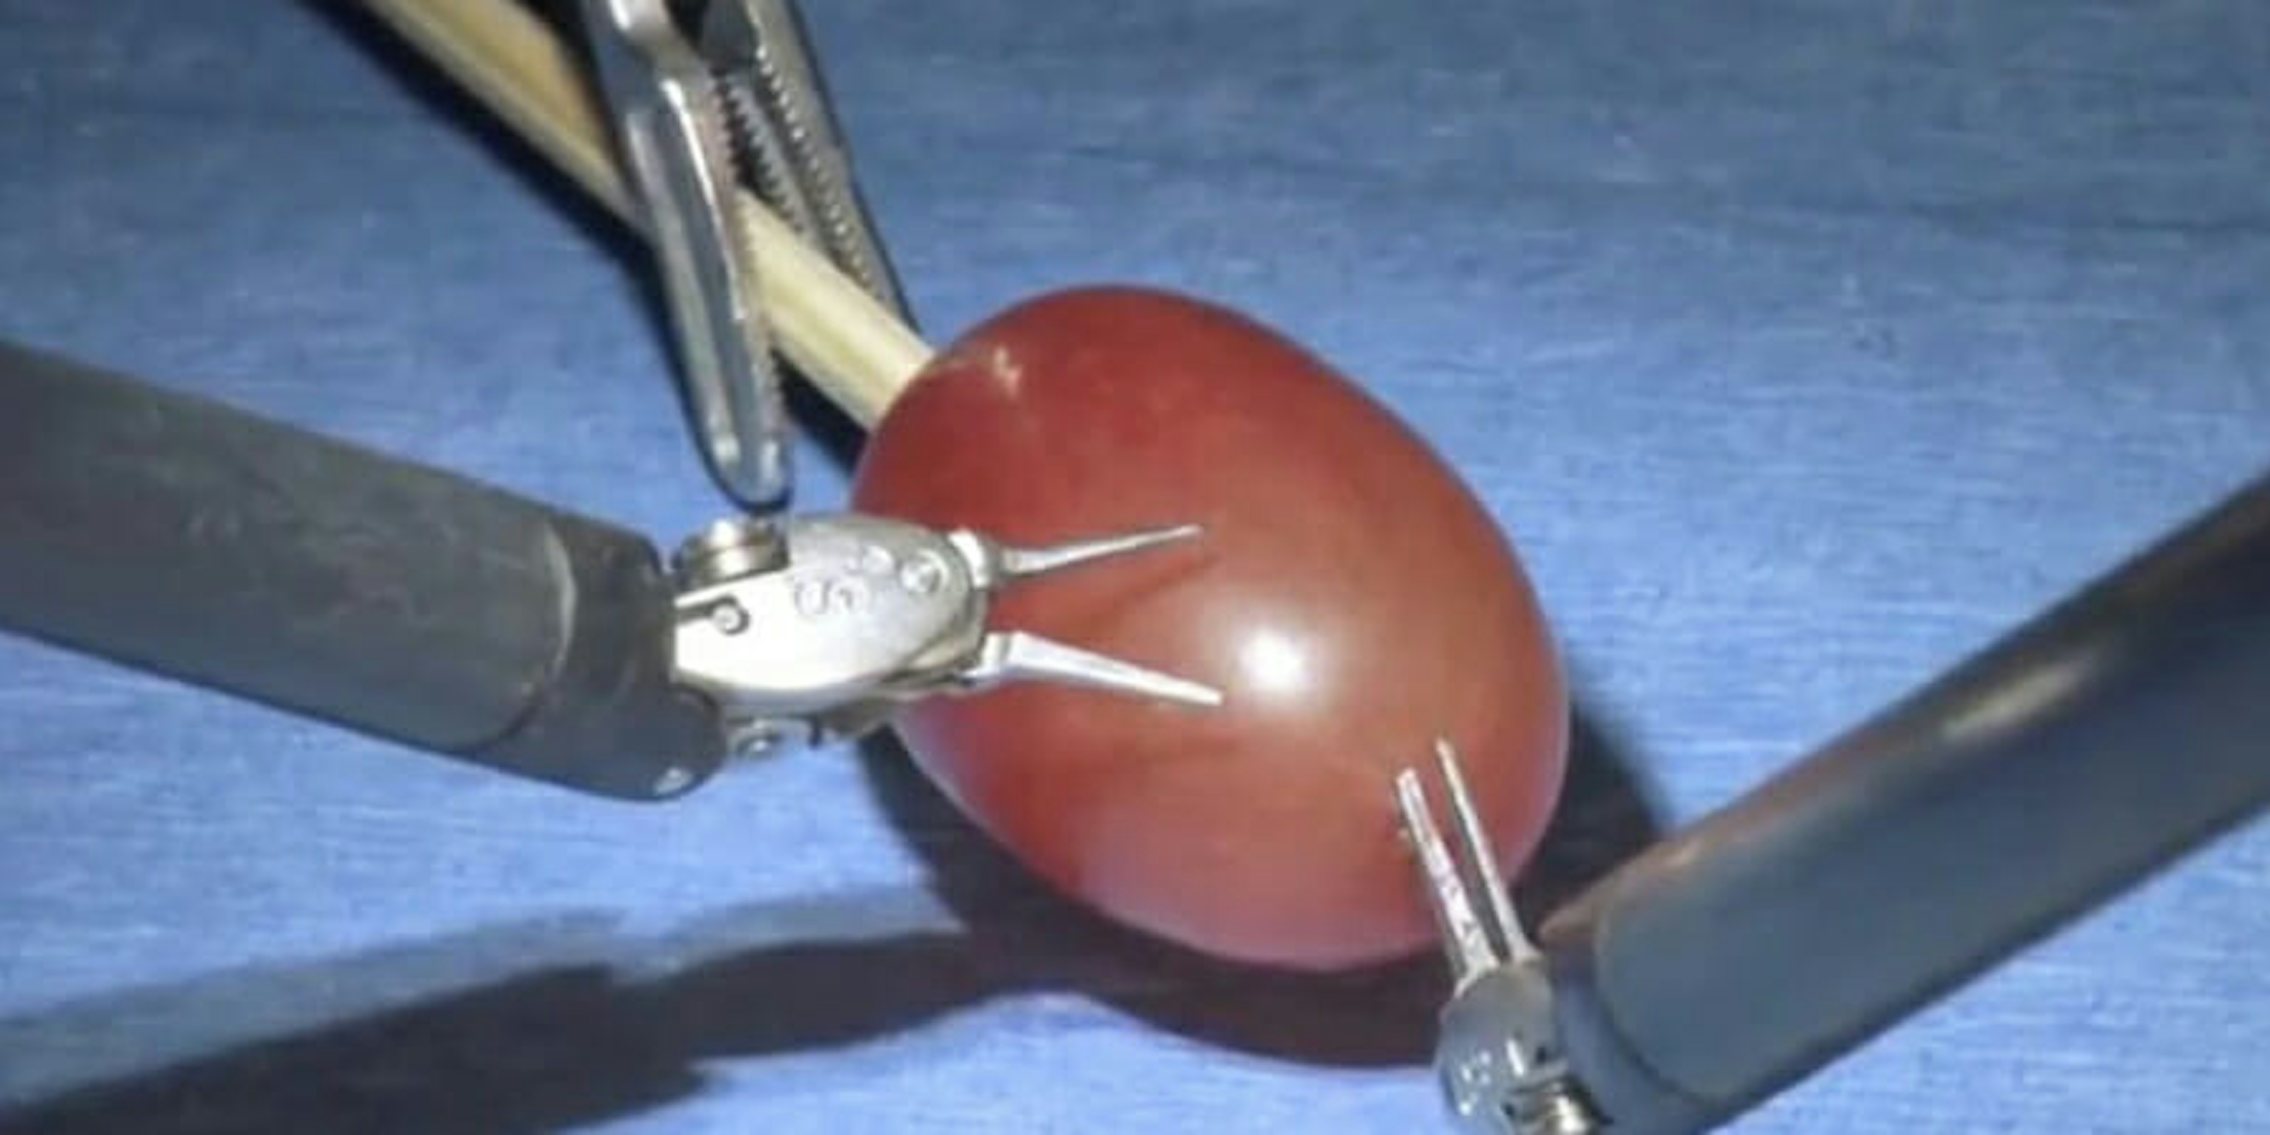 surgery on a grape